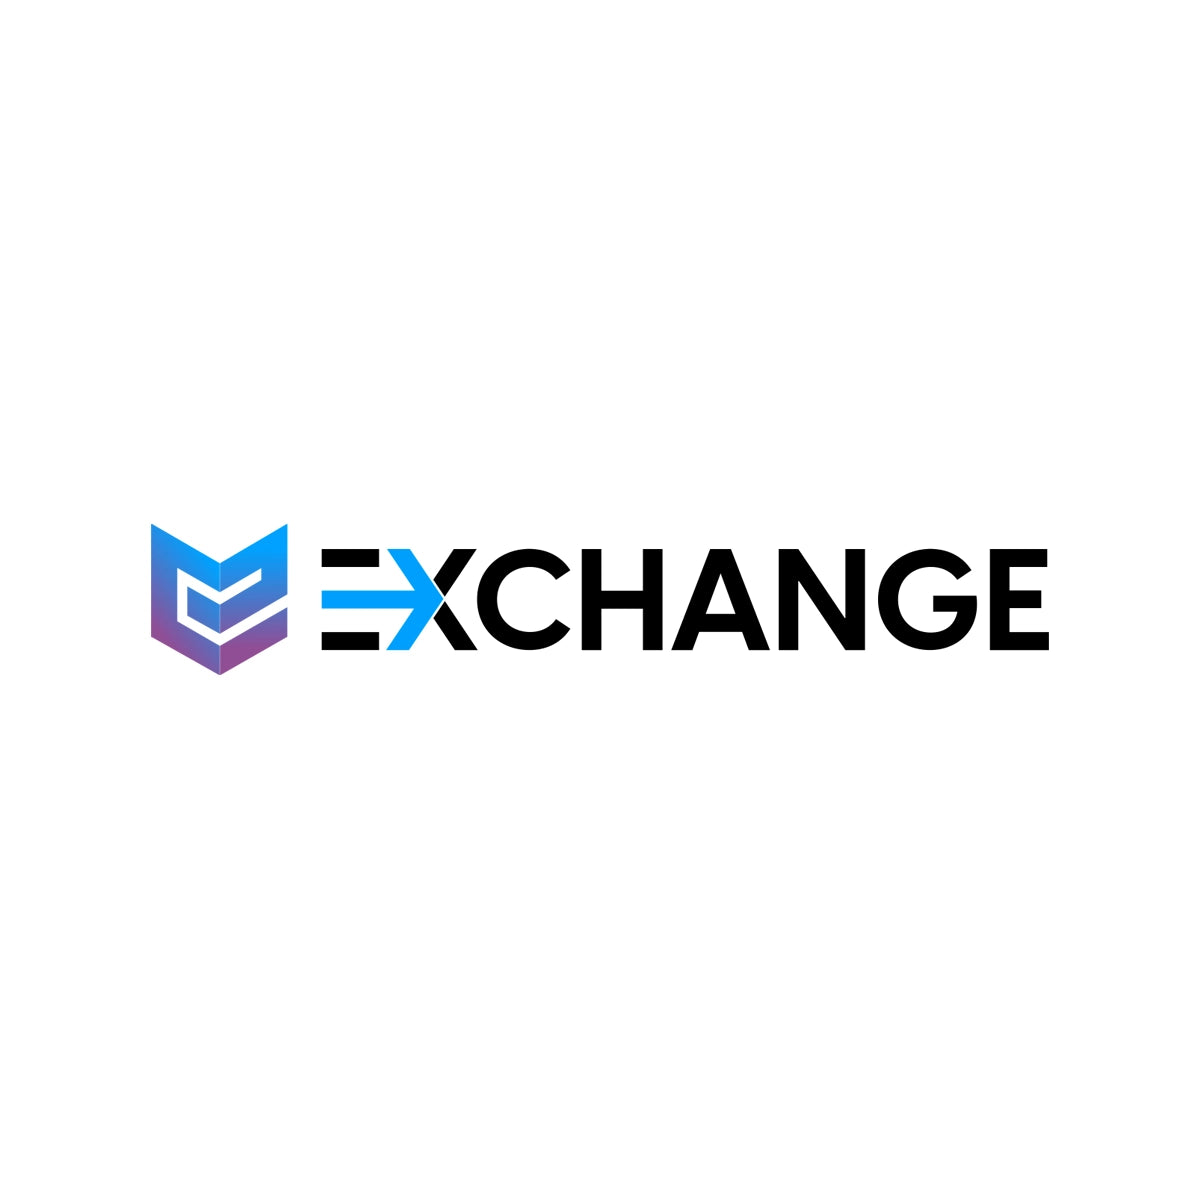 exchangeinc.com